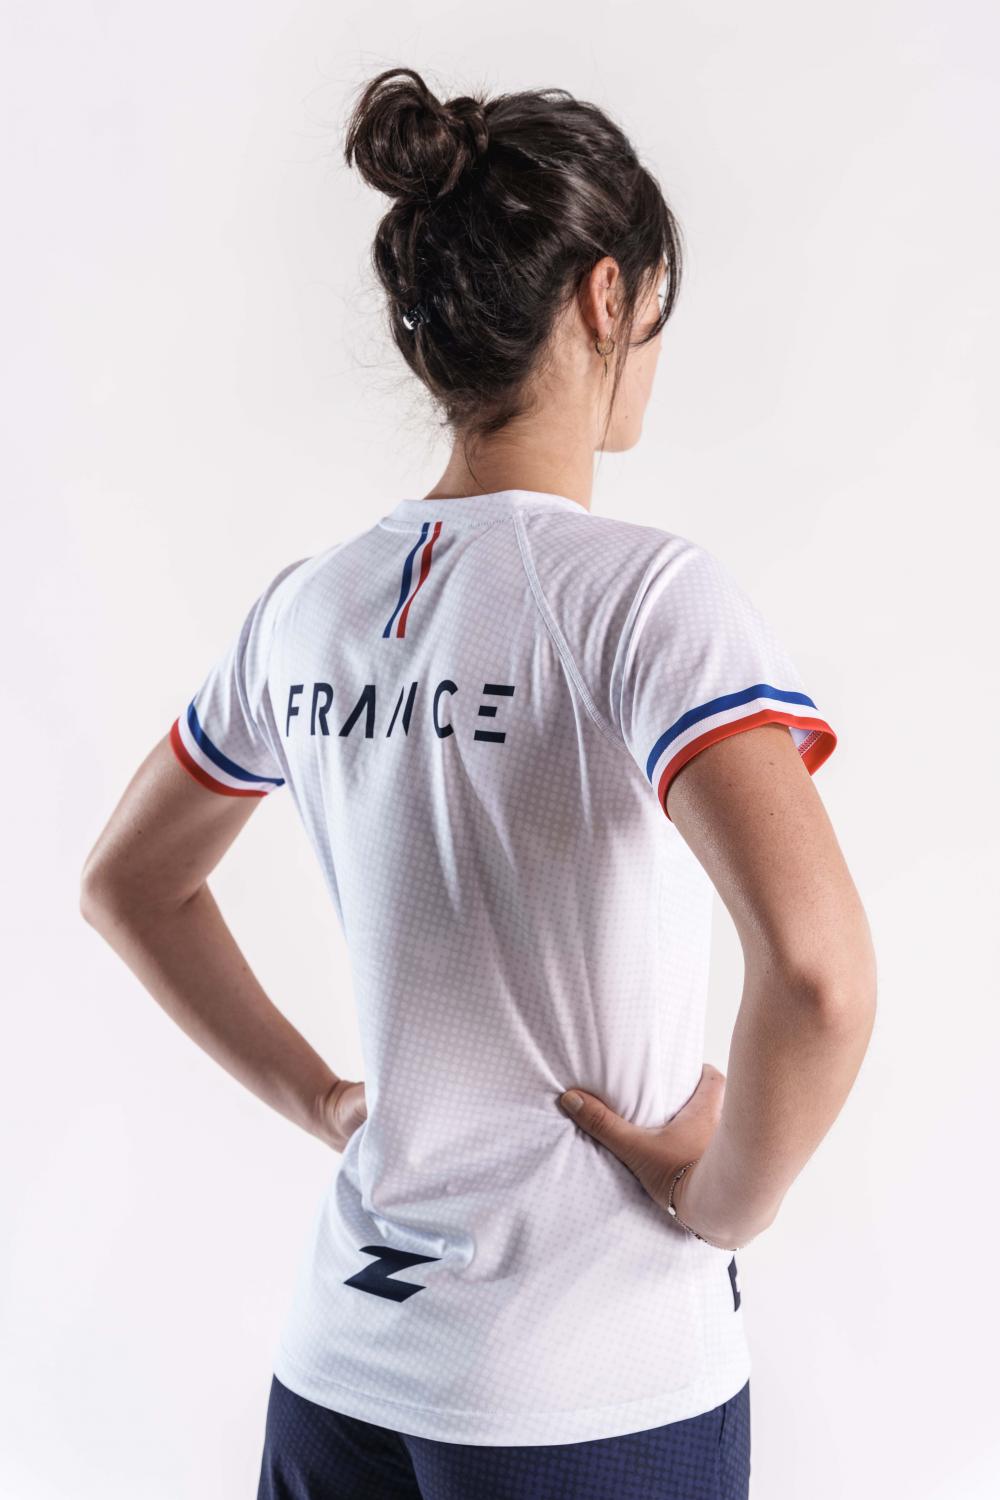 T-shirt manches courtes running femmes équipe de France Z3R0D